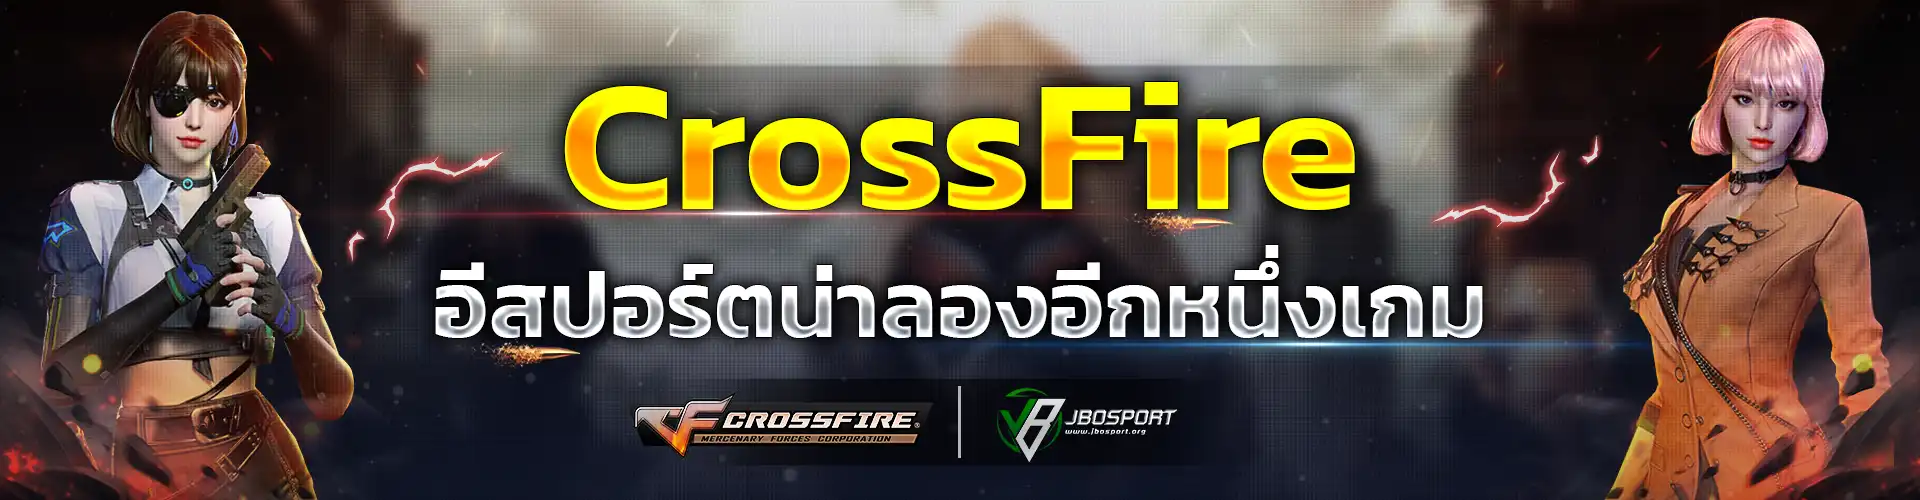 CrossFire-JBOSPORT